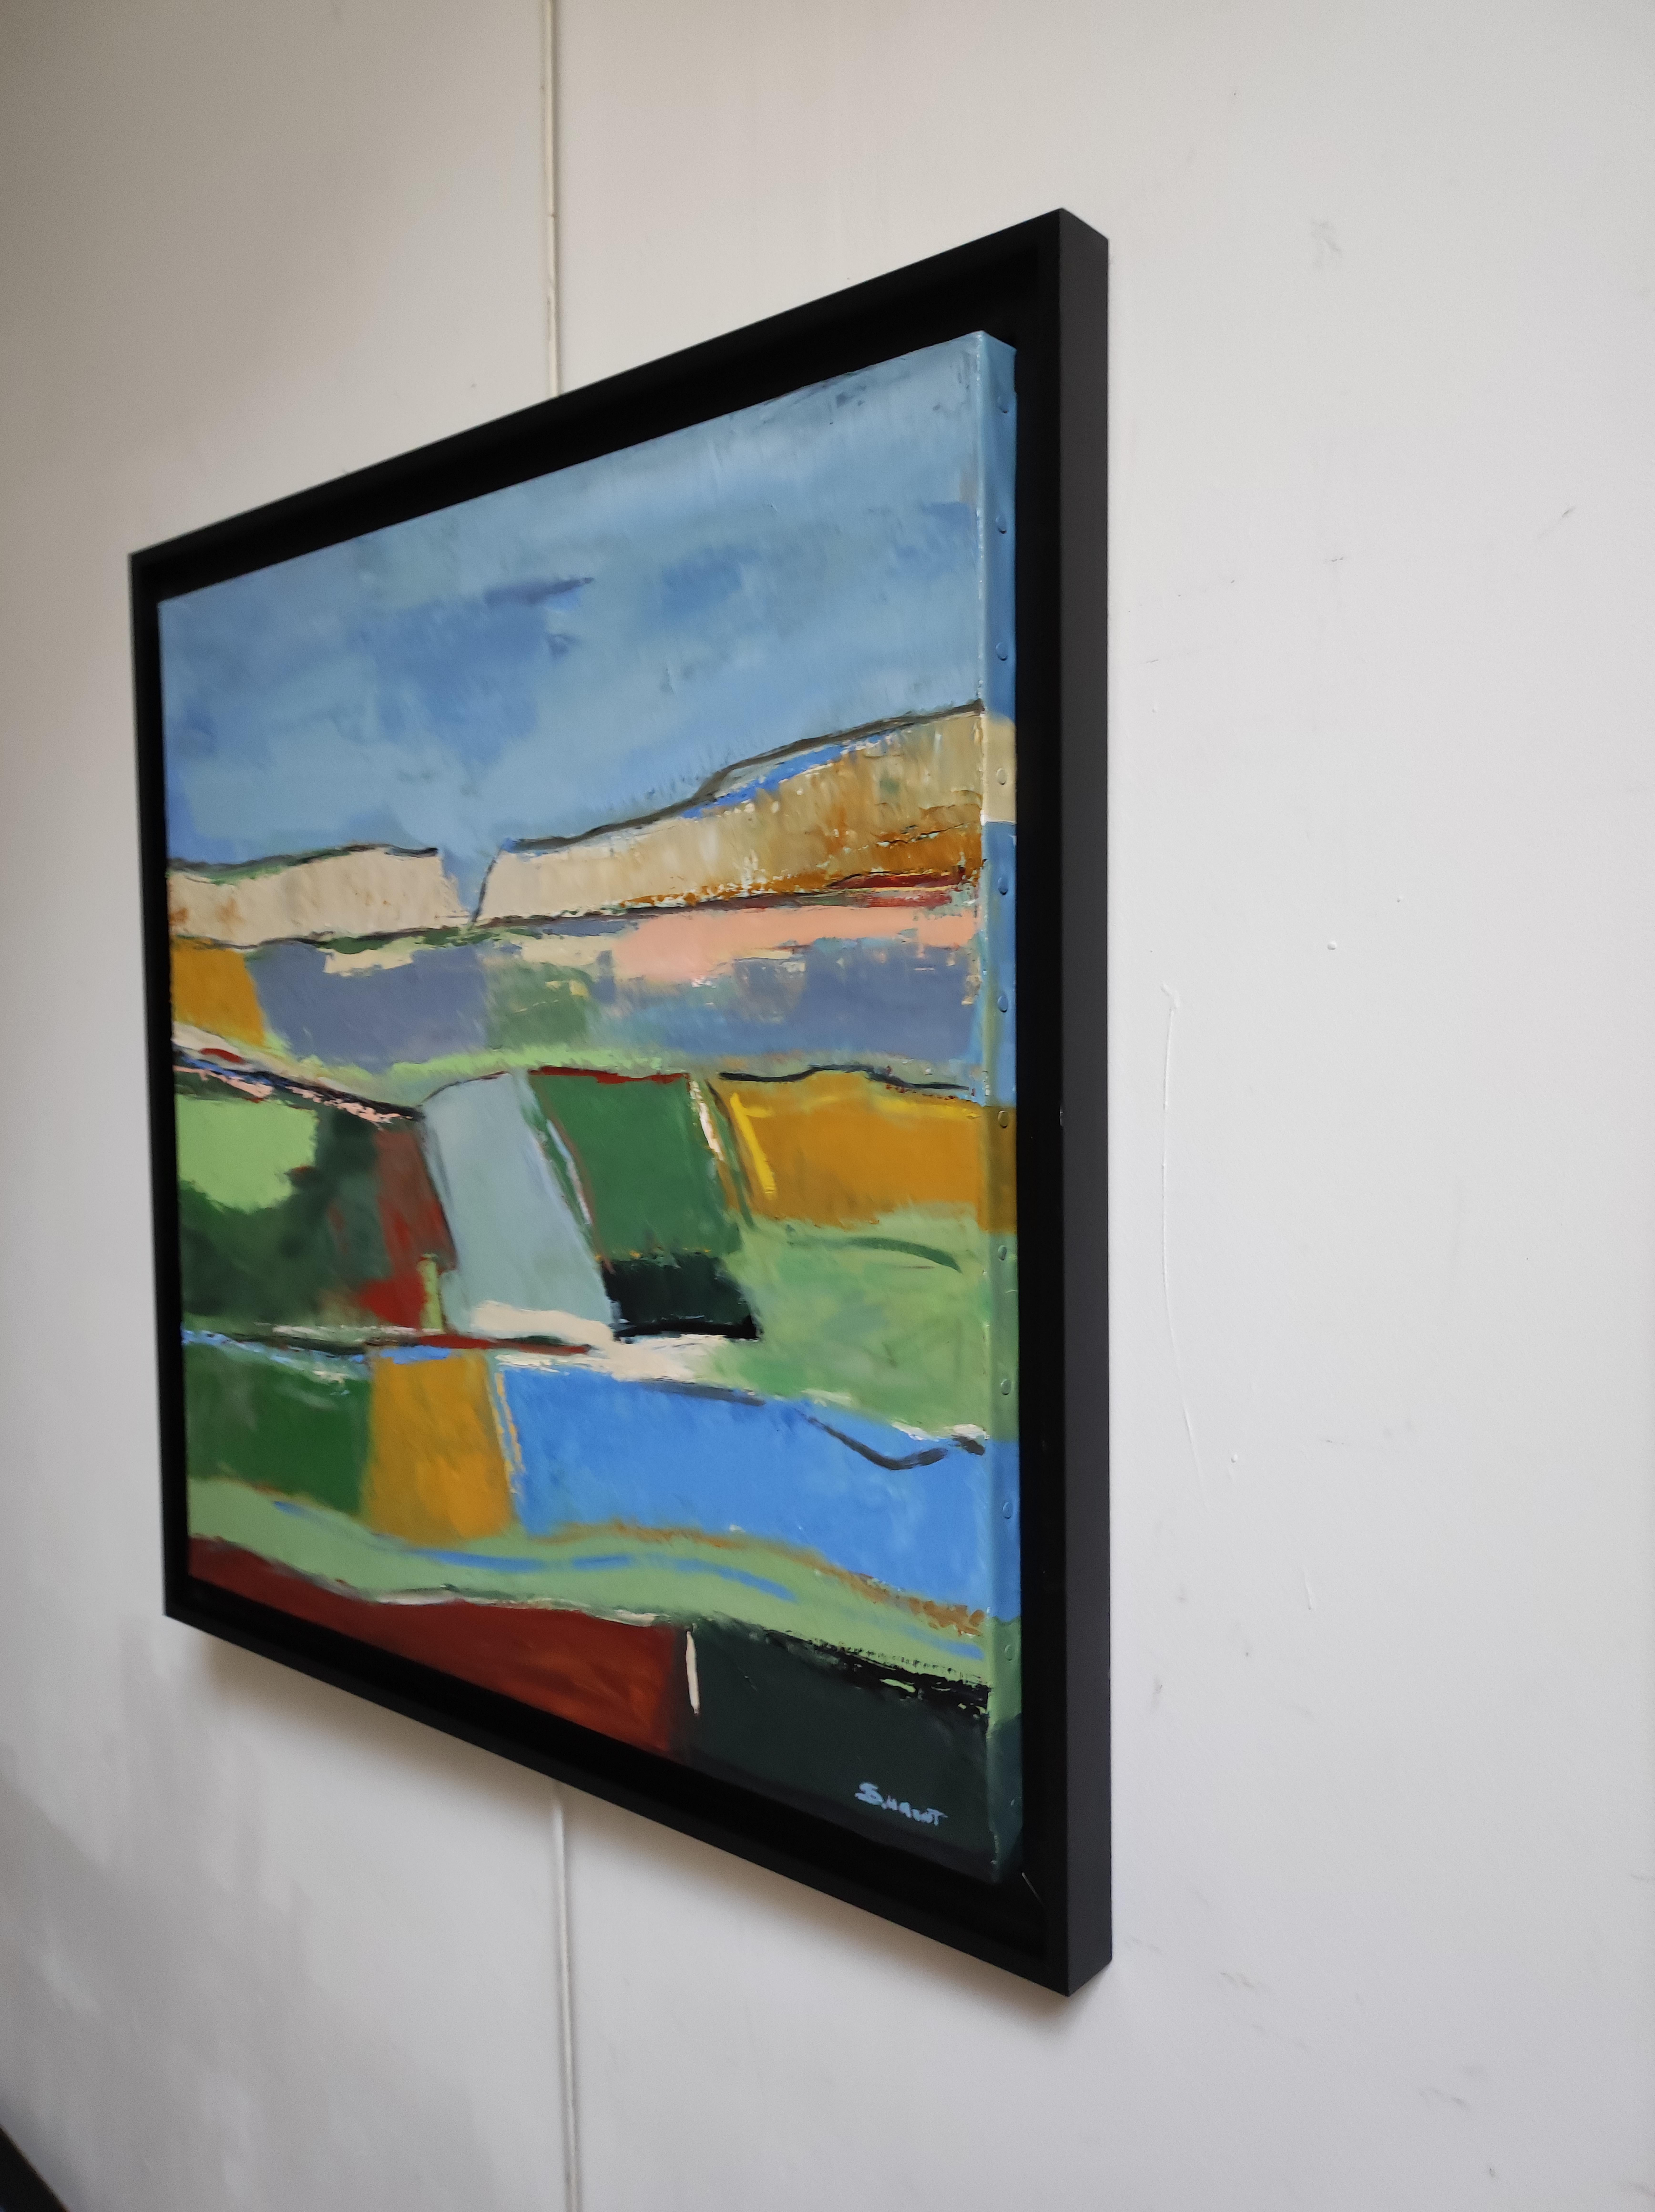 Rhapsodie colorée, paysage, huile sur toile, expressionnisme, multicolore, français - Expressionnisme abstrait Painting par SOPHIE DUMONT